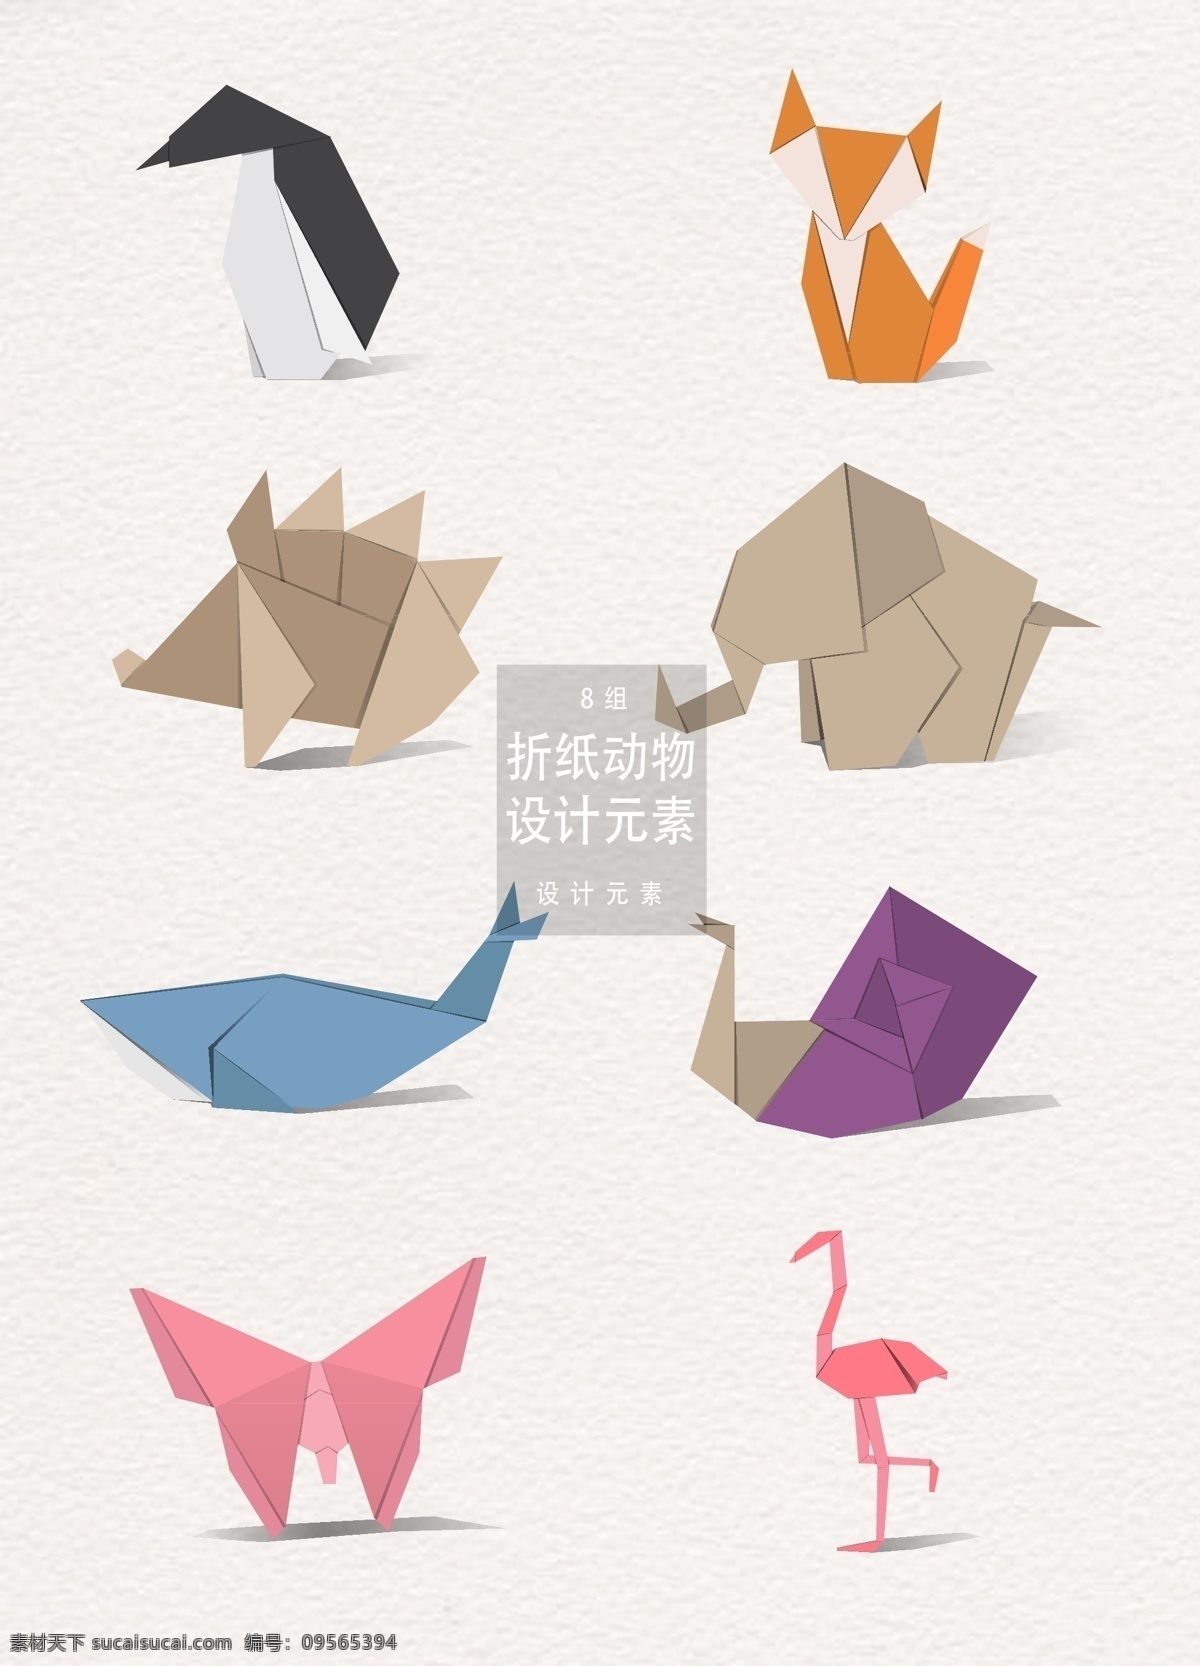 折纸 动物 元素 企鹅 狐狸 大象 蝴蝶 折纸动物 刺猬 鲸鱼 火鸡 火烈鸟